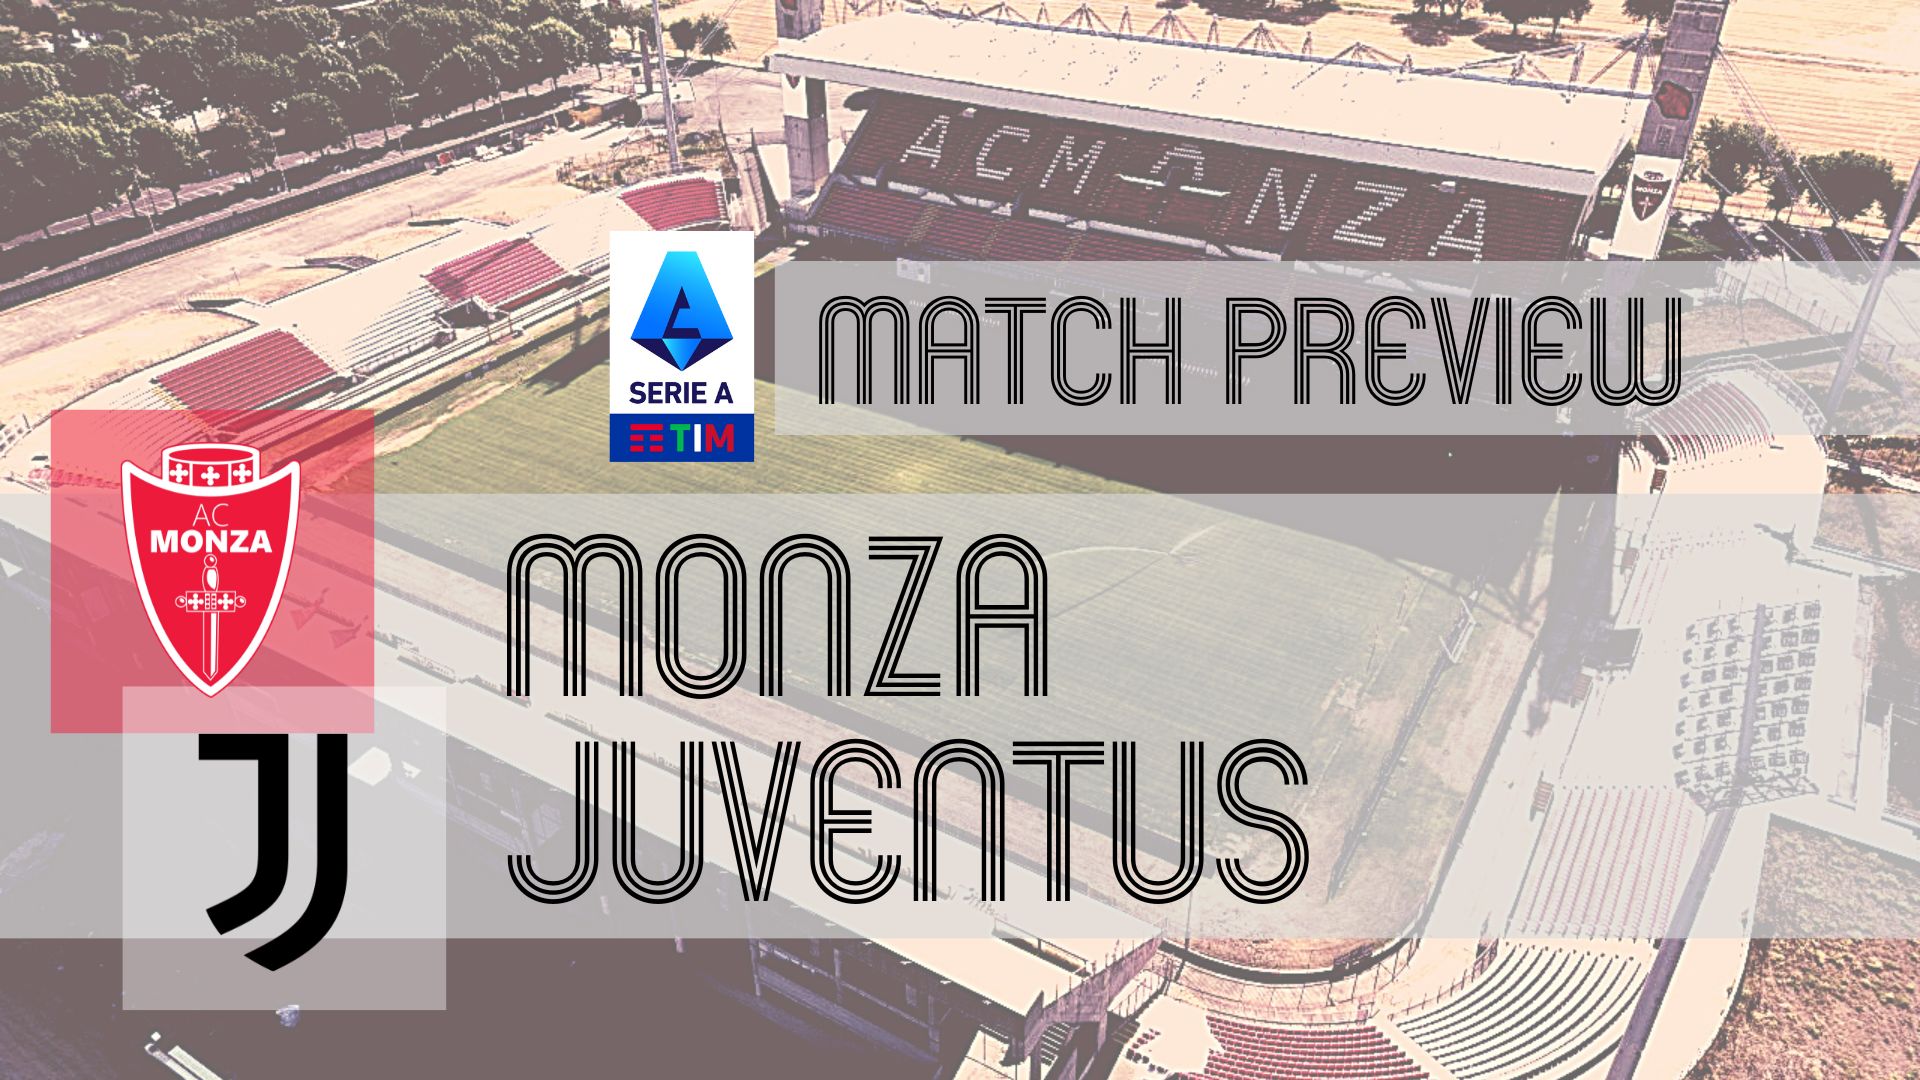 Empoli vs Genoa prediction, preview, team news and more